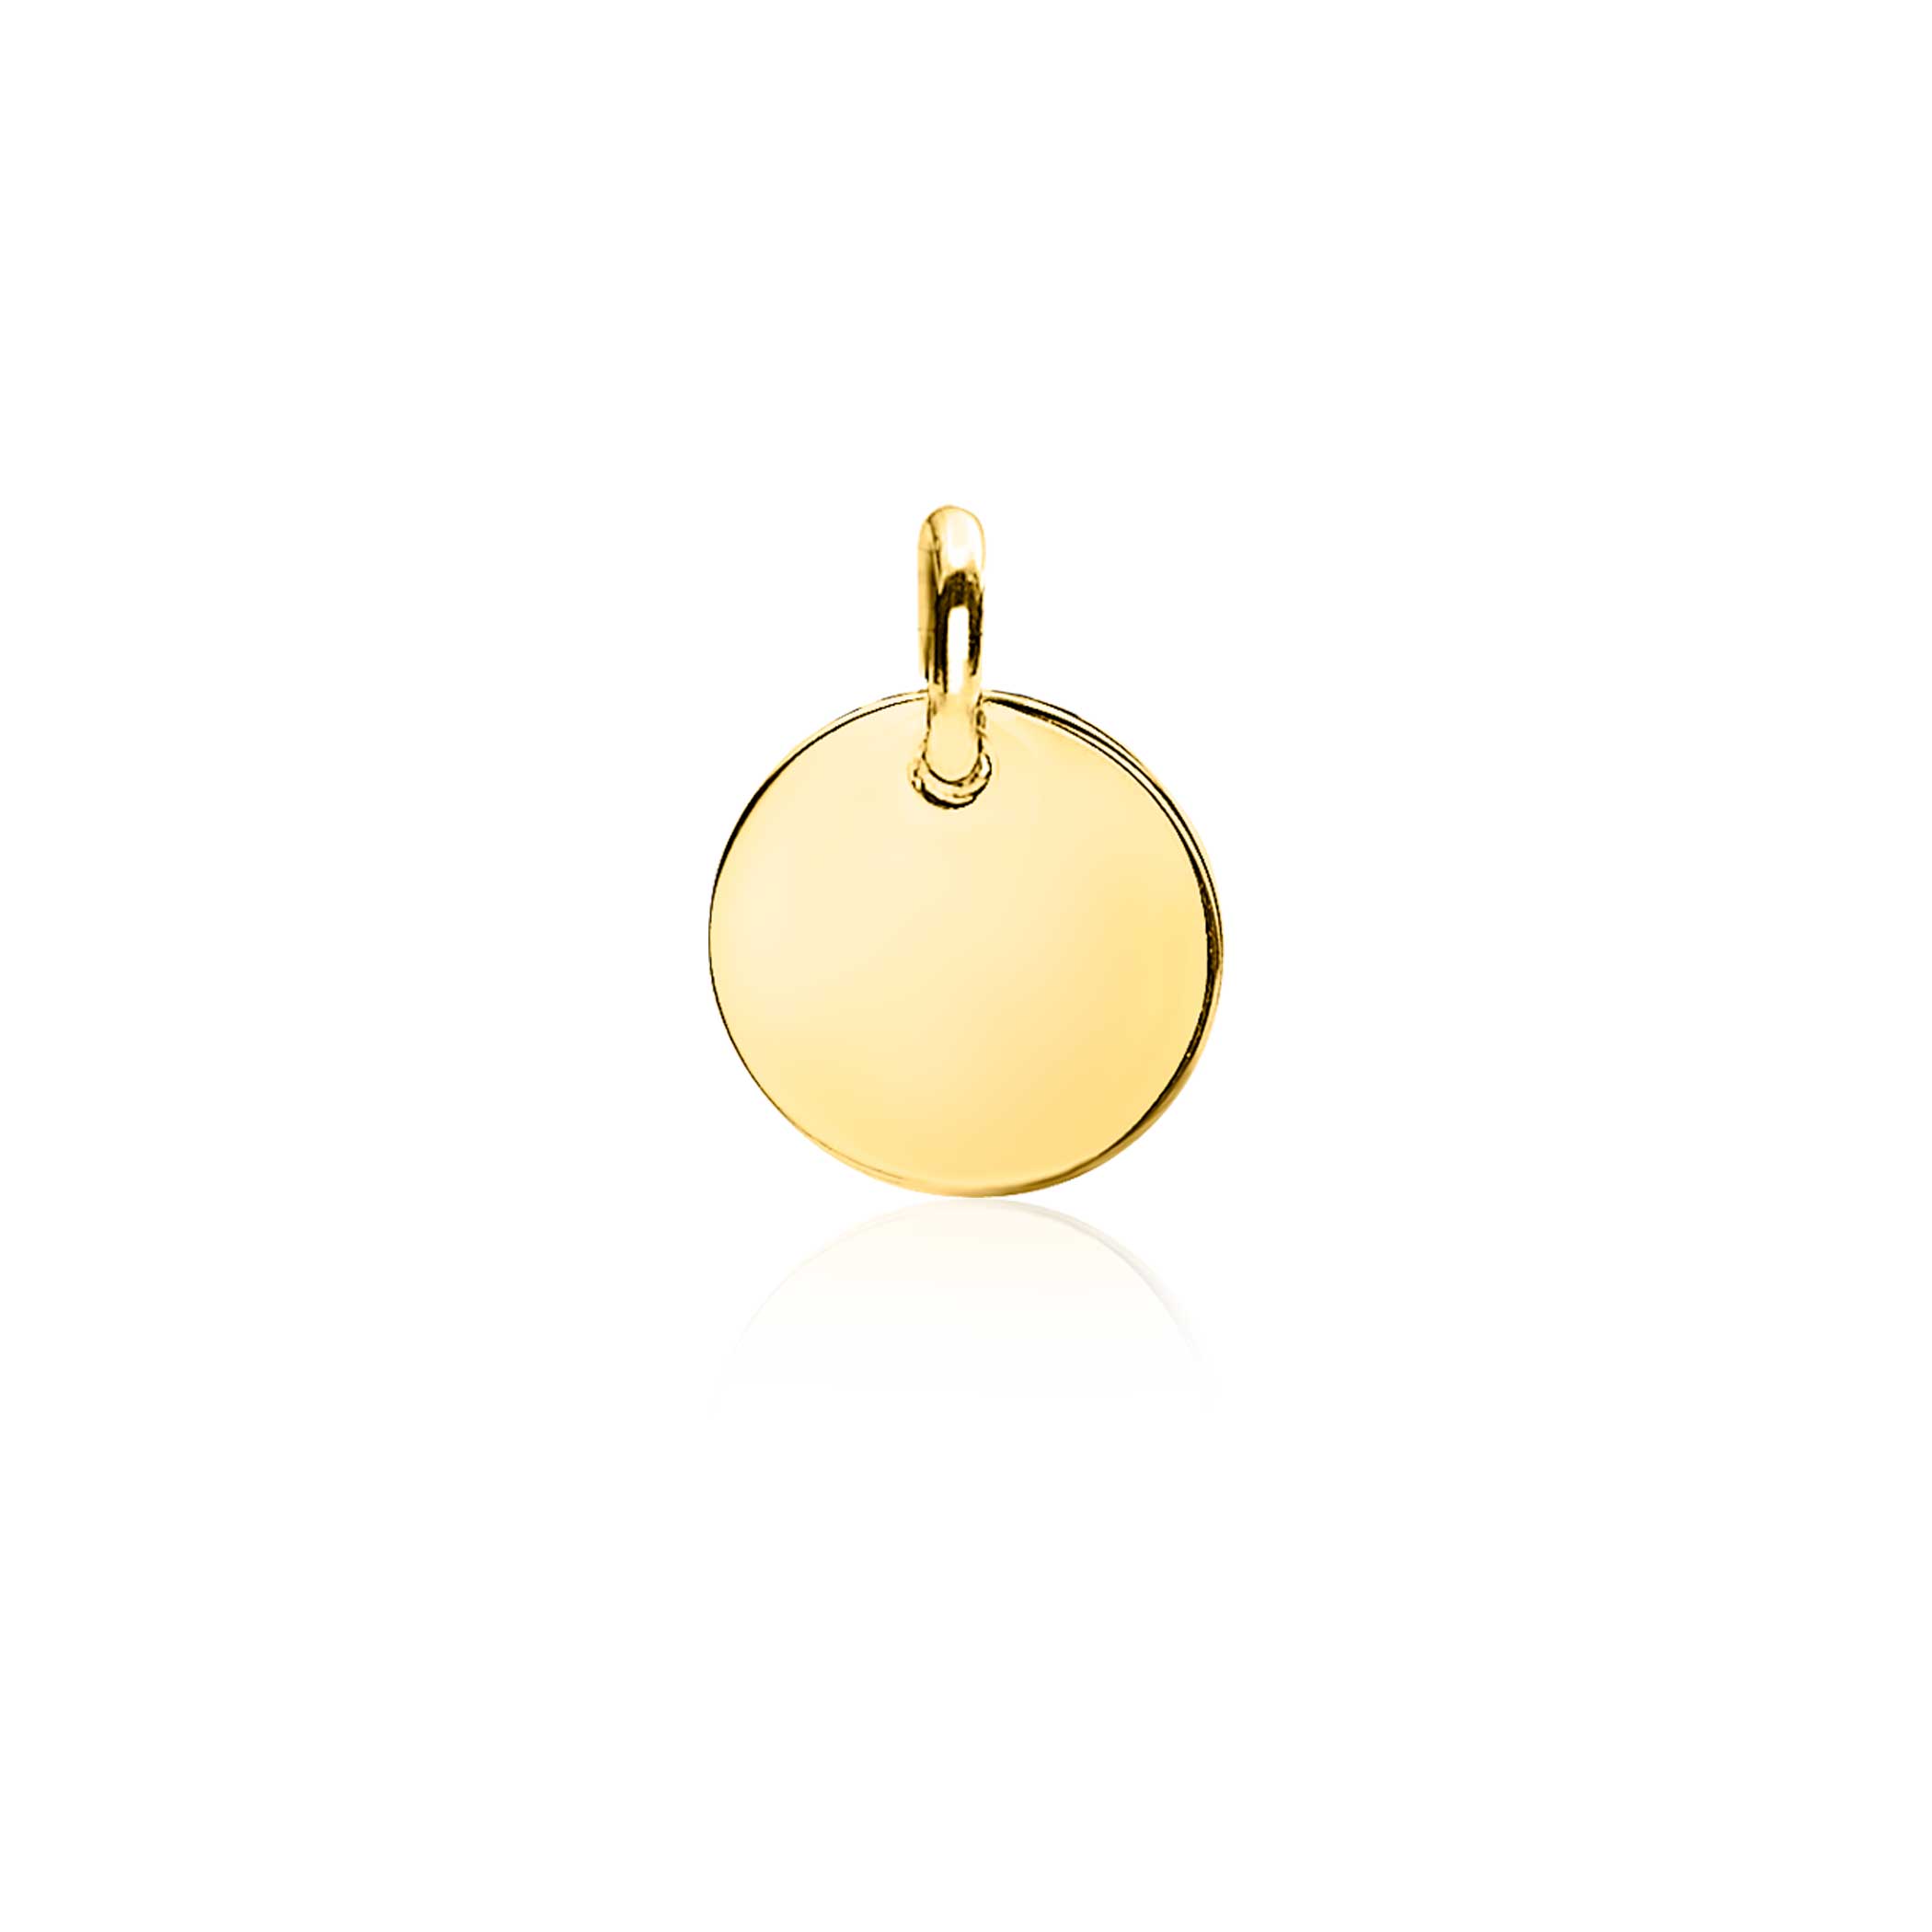 ZINZI Gold 14 karaat gouden hanger rond graveerplaatje 10mm - Sjaak knijn